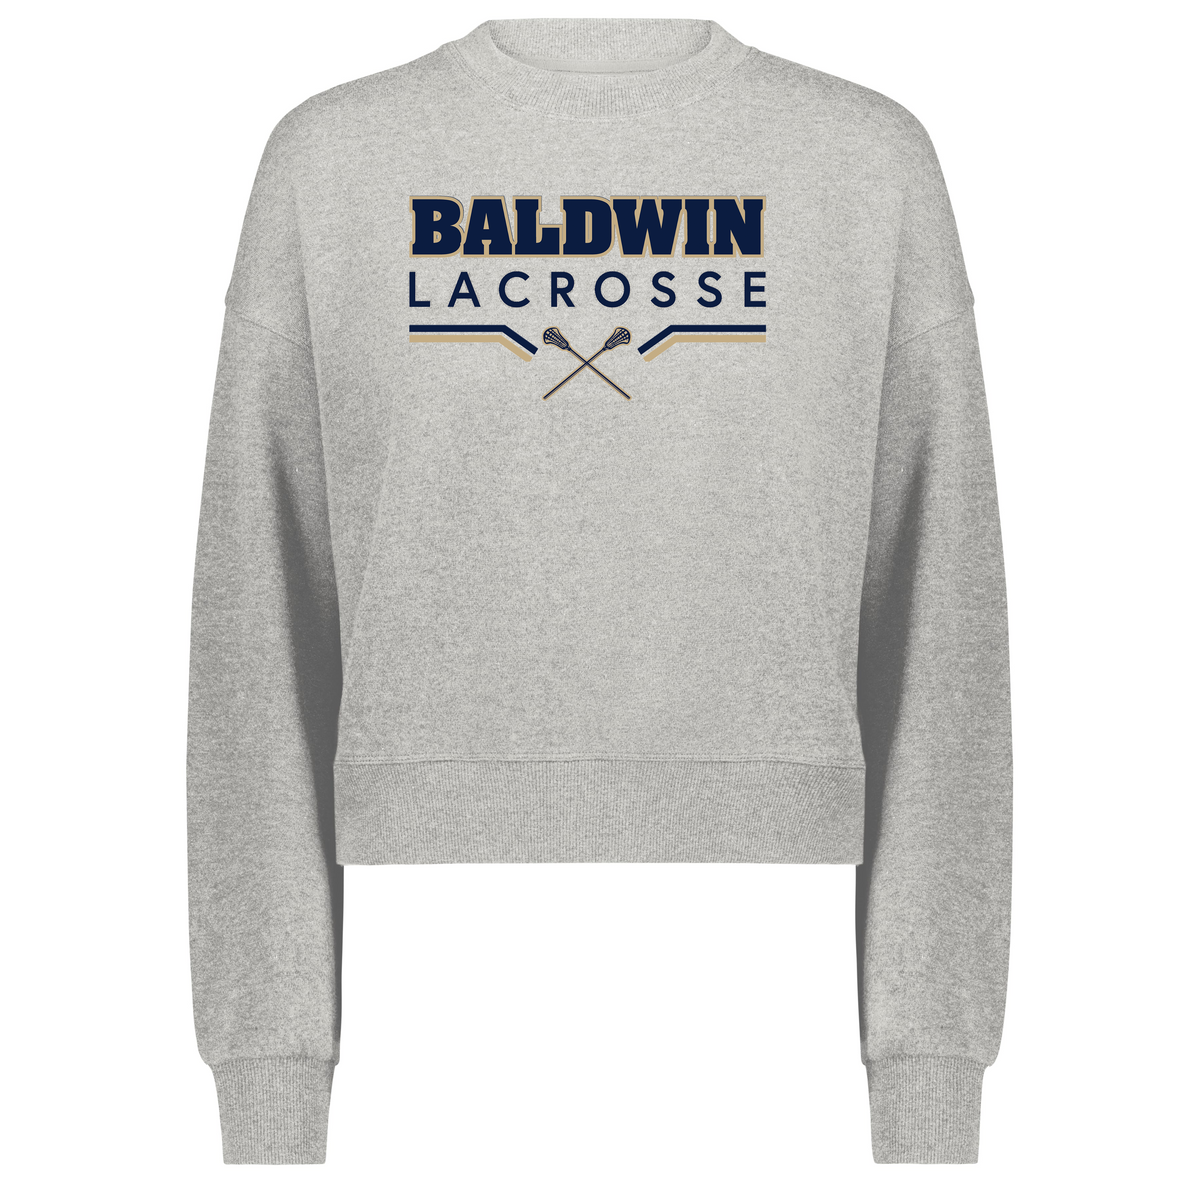 Baldwin HS Girls Lacrosse Ladies Slouchy Crew